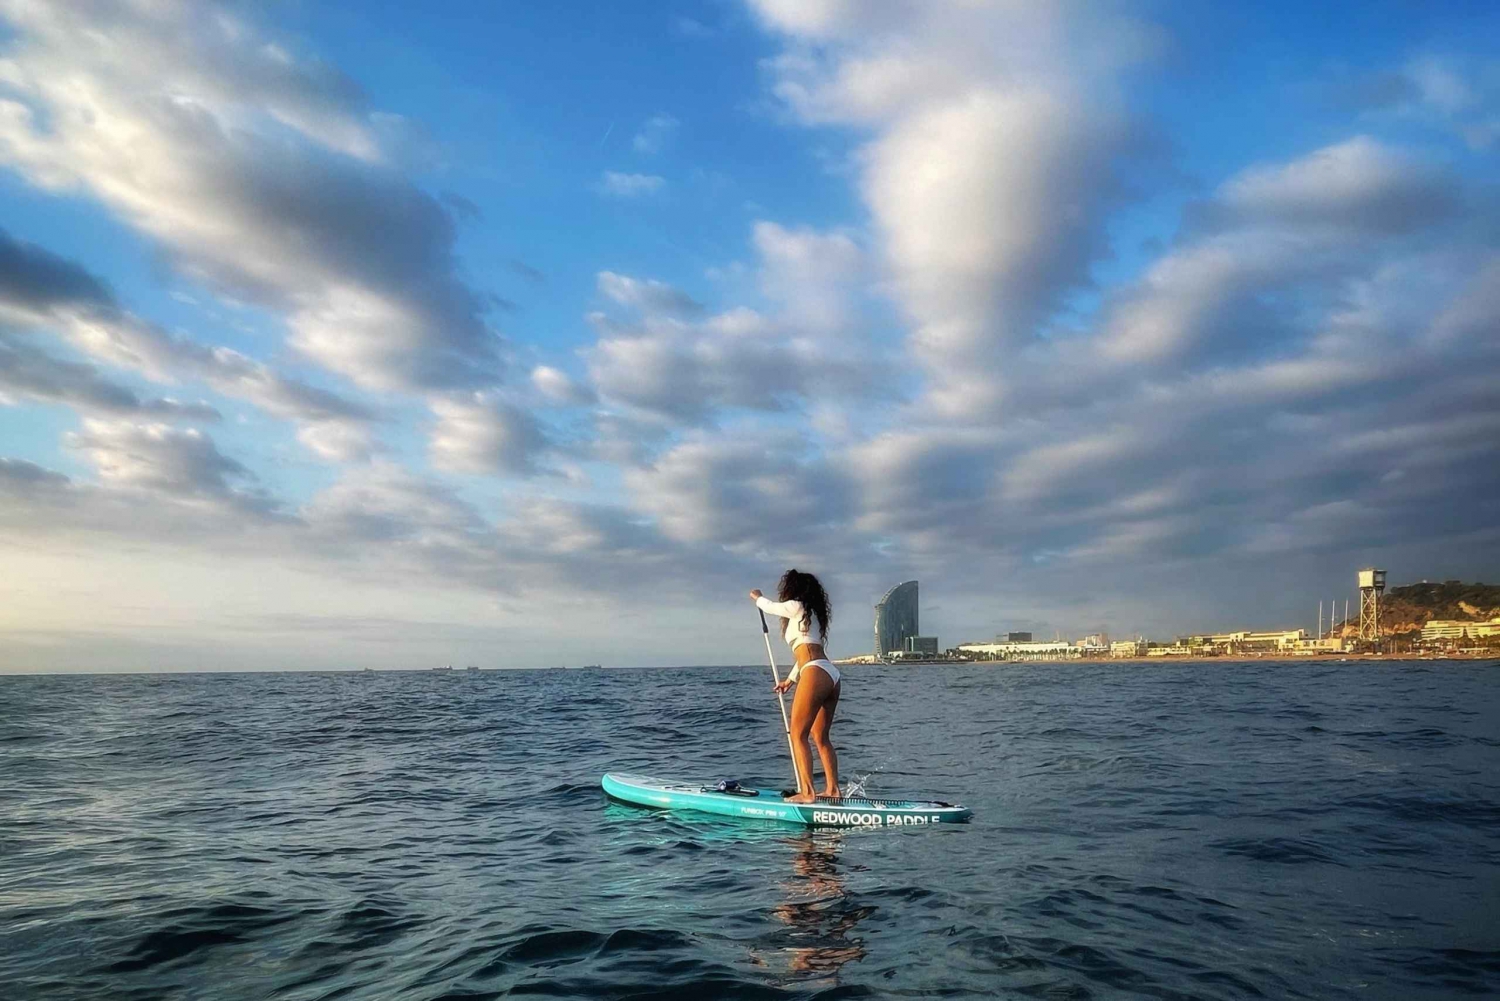 Puesta de sol+paddle surf con música+fotos&vídeos Barceloneta+merienda